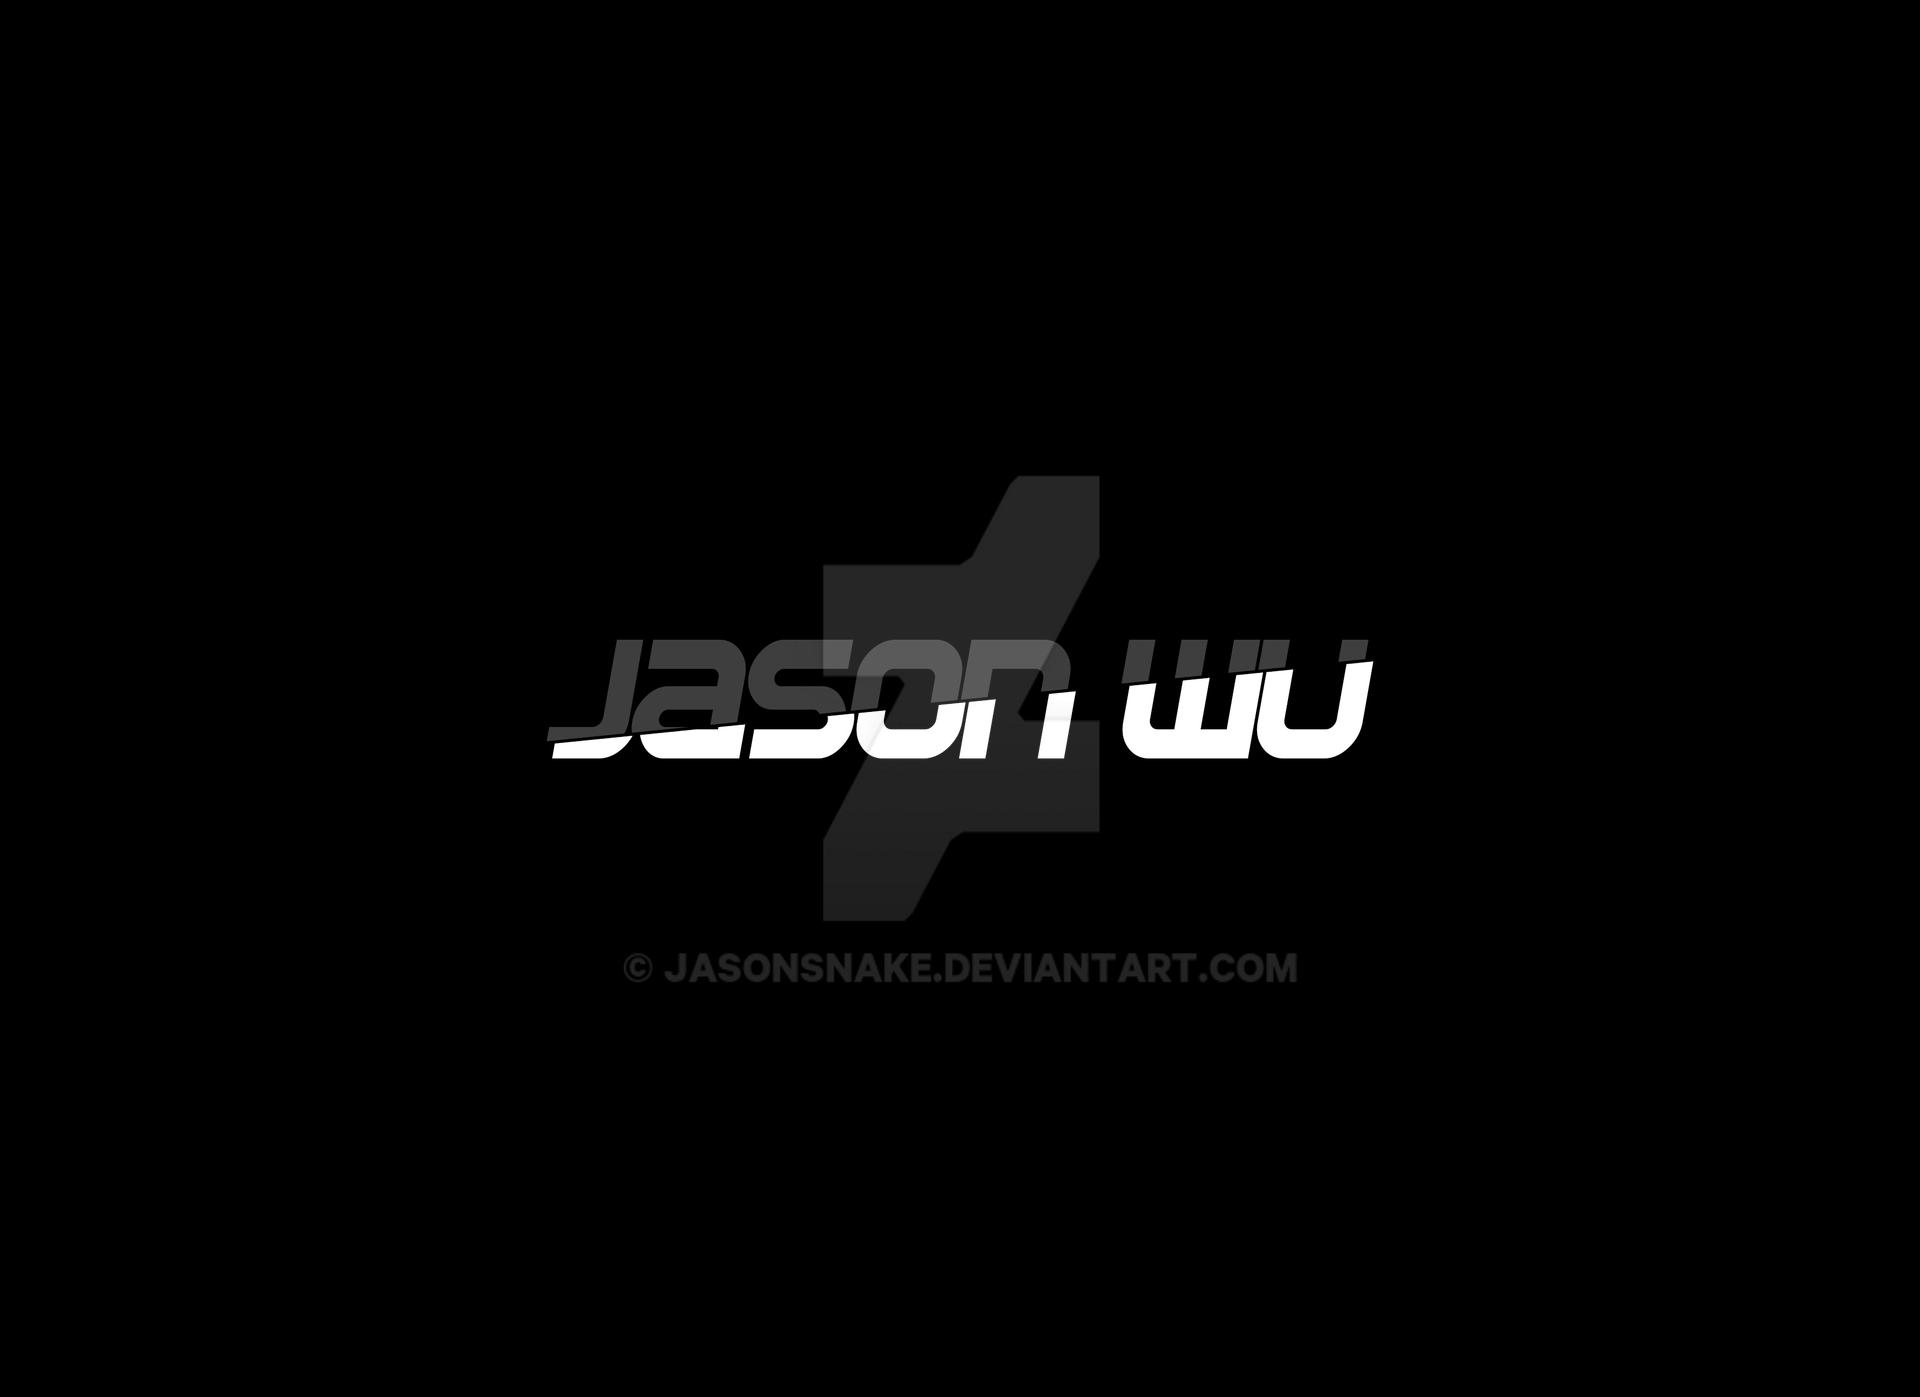 Jason Wu logo 2